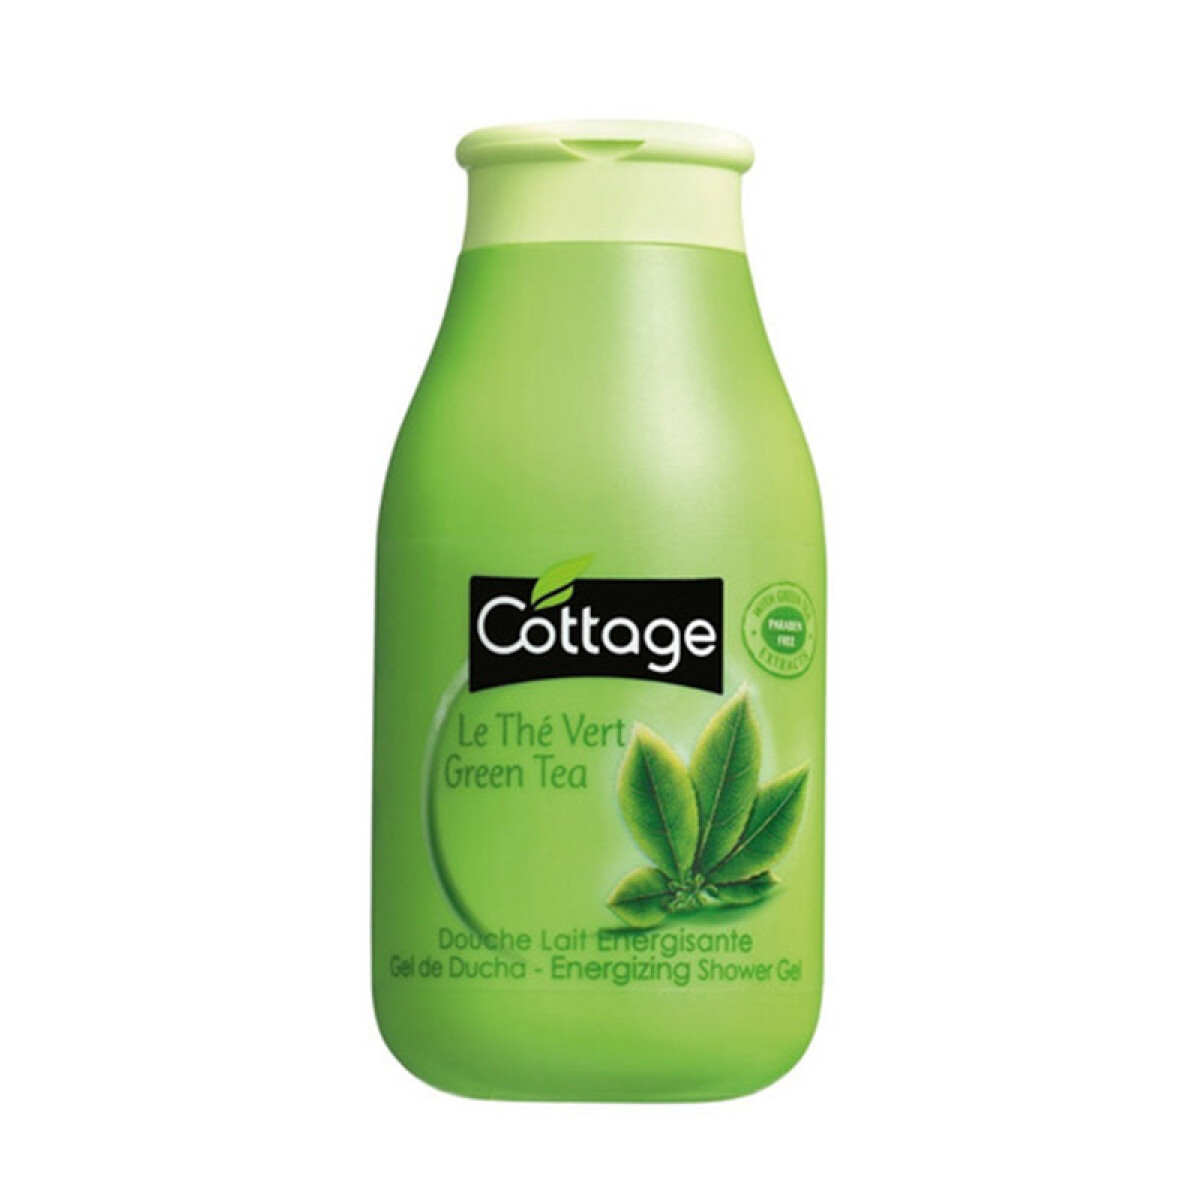 Cottage Gel de ducha- Té Verde 250ml 